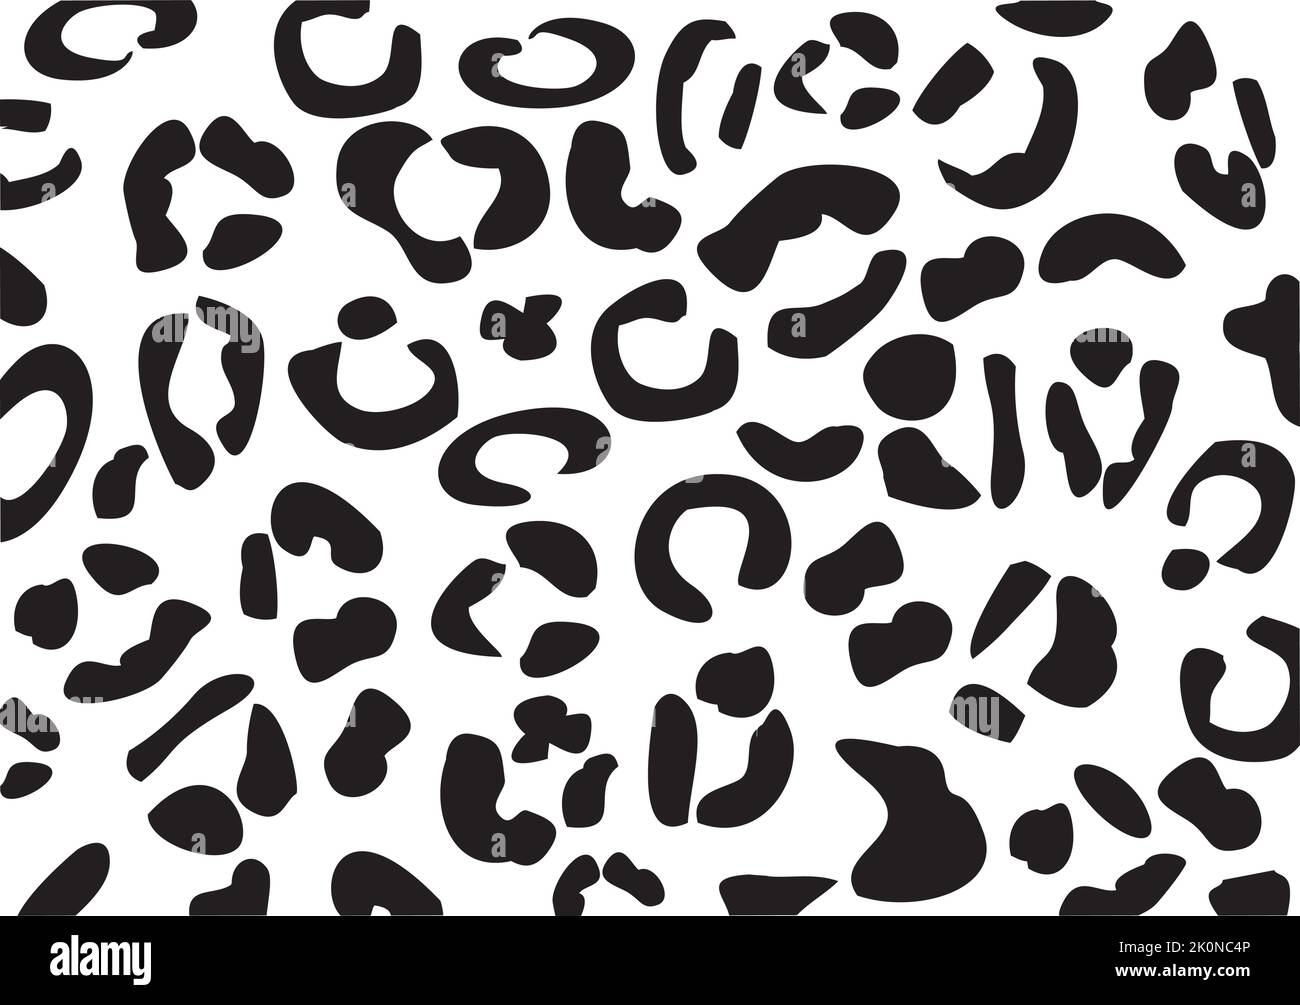 Leopard pattern Stock-Vektorgrafiken kaufen - Seite 2 - Alamy